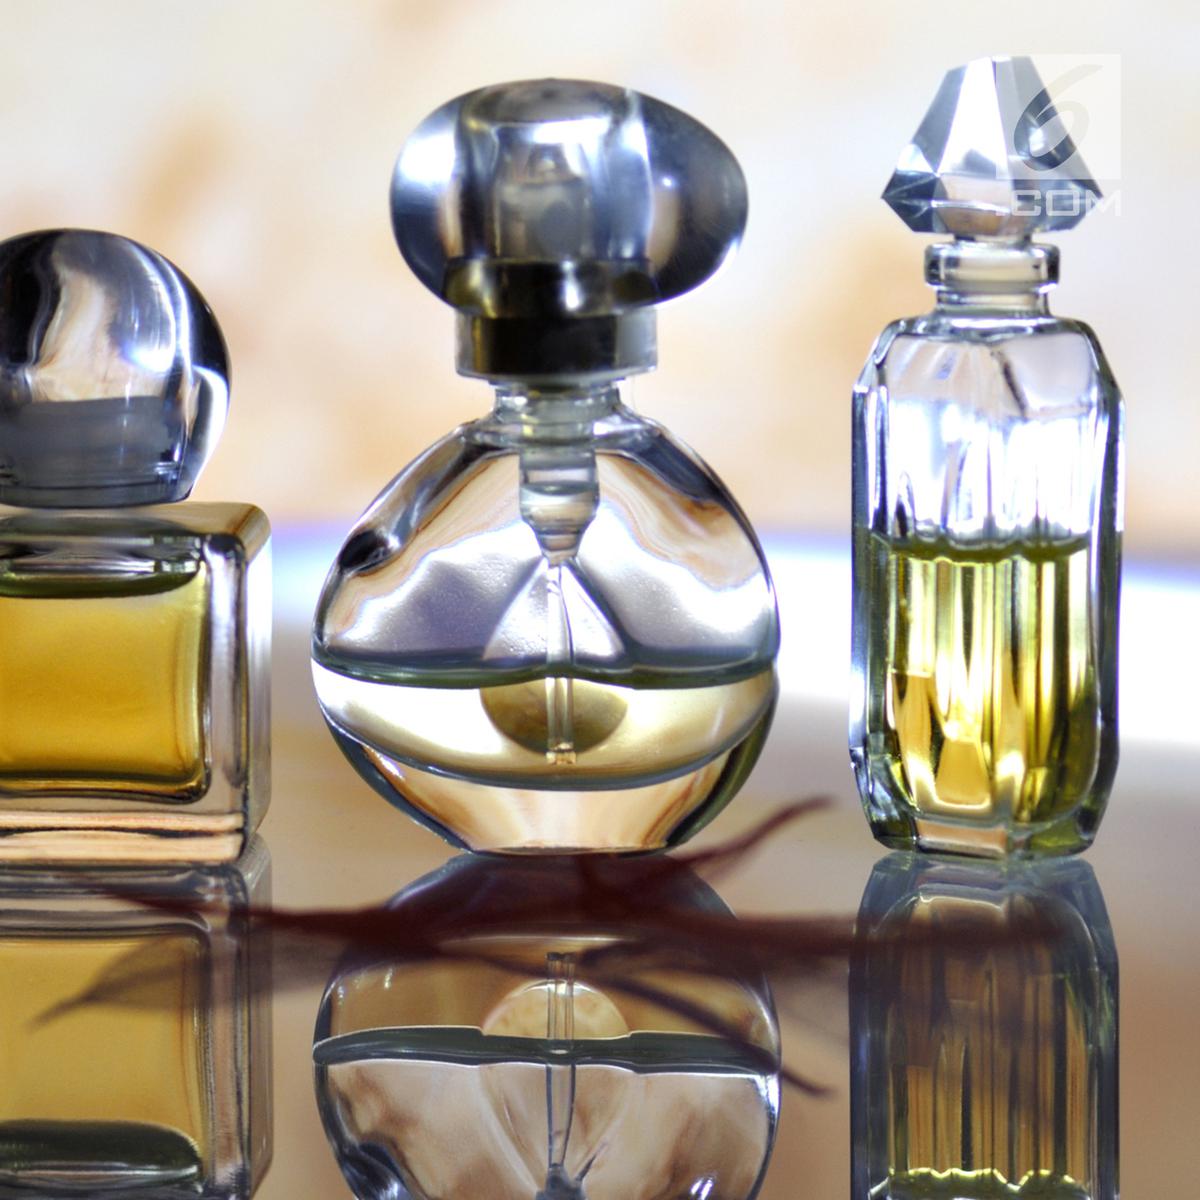 Как сделать парфюм